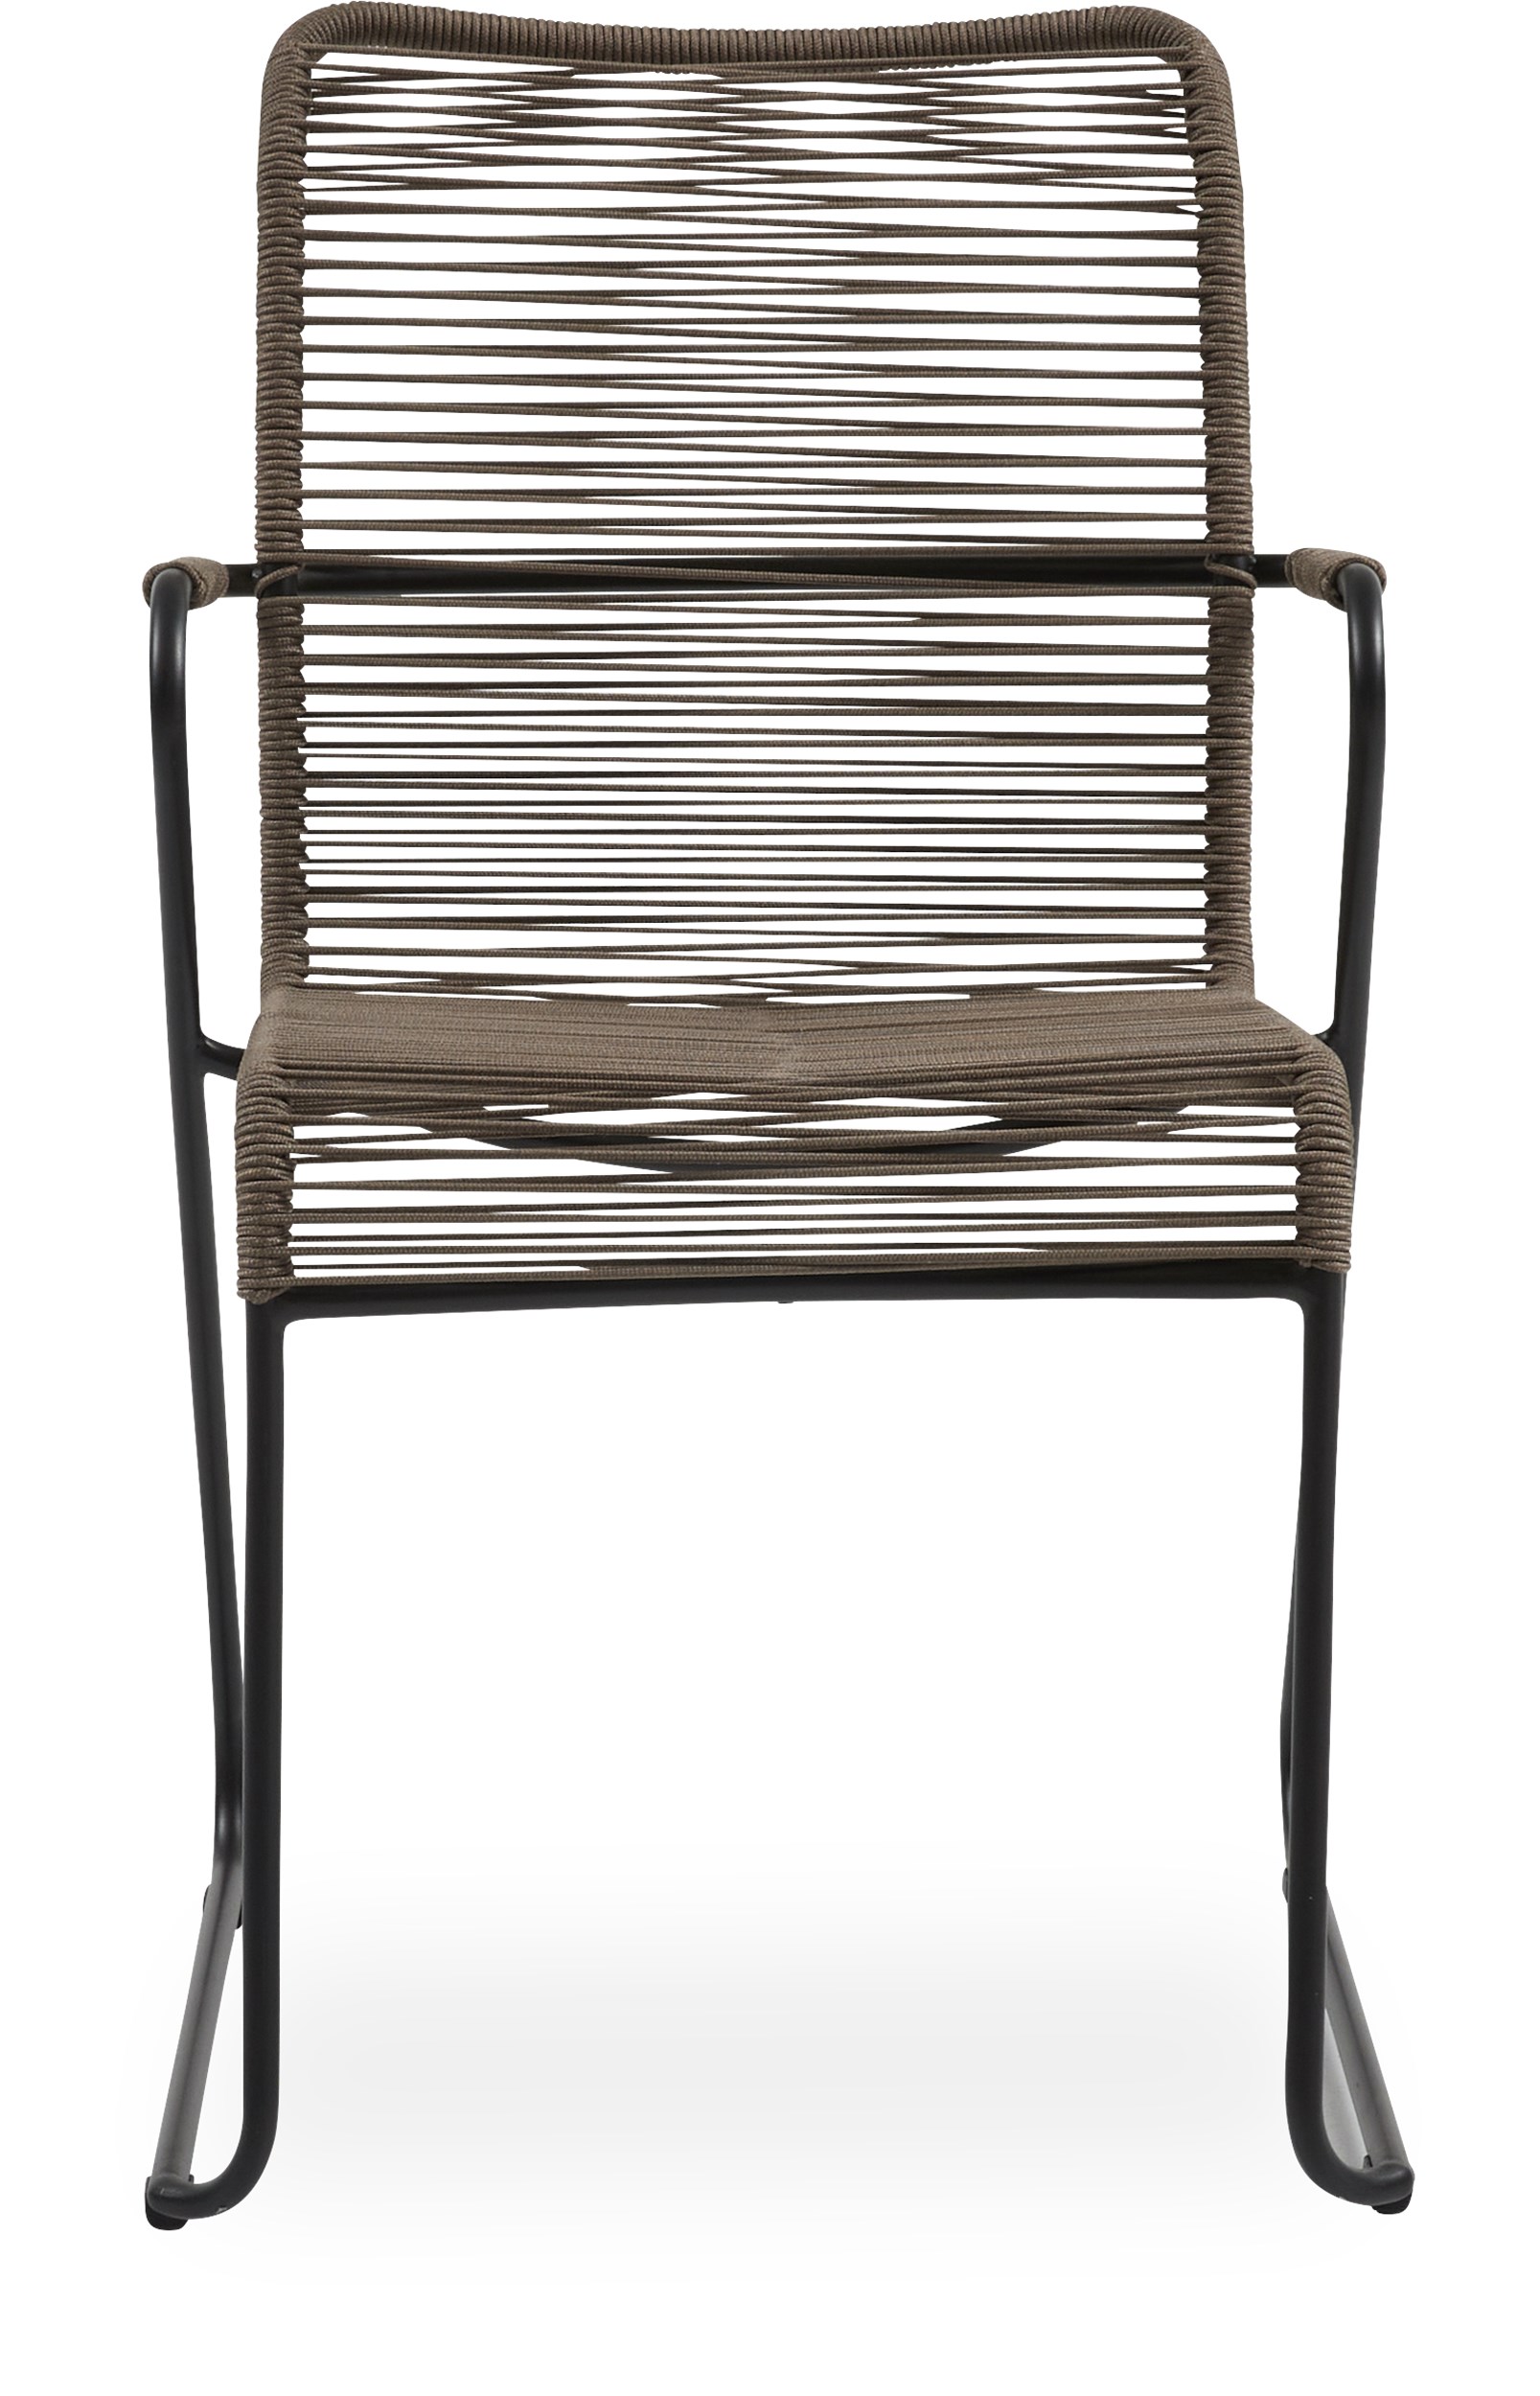 Branco Trädgårdsstol - Sits rygg i taupe rep och stomme i svartmålad stål